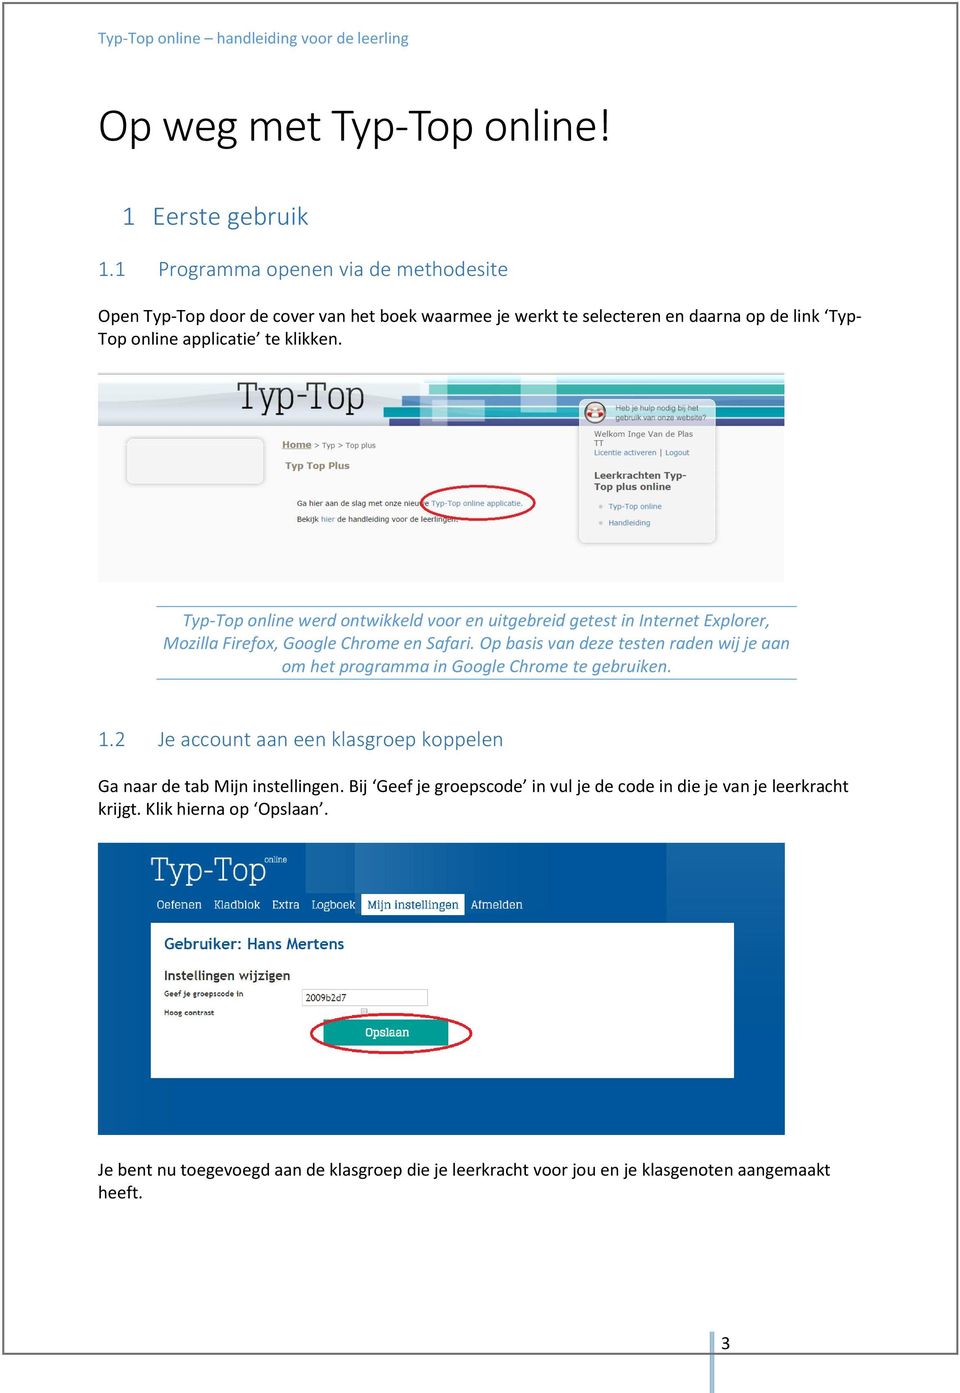 Typ-Top online werd ontwikkeld voor en uitgebreid getest in Internet Explorer, Mozilla Firefox, Google Chrome en Safari.